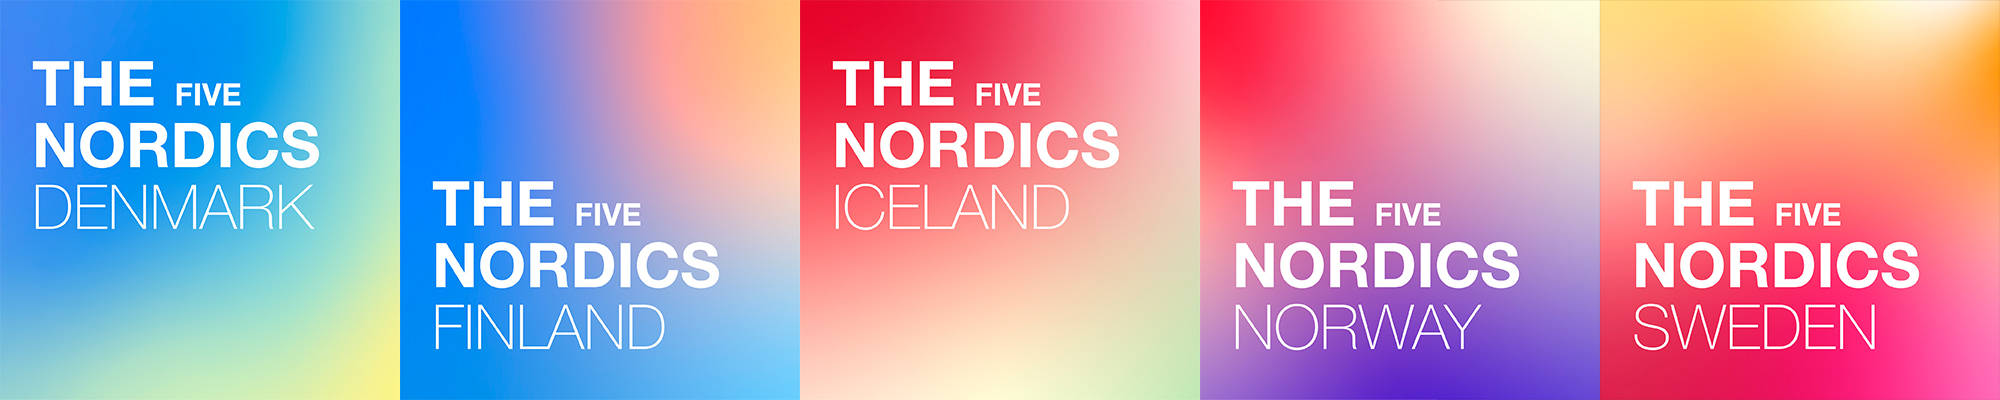 The Five Nordics © The Five Nordics